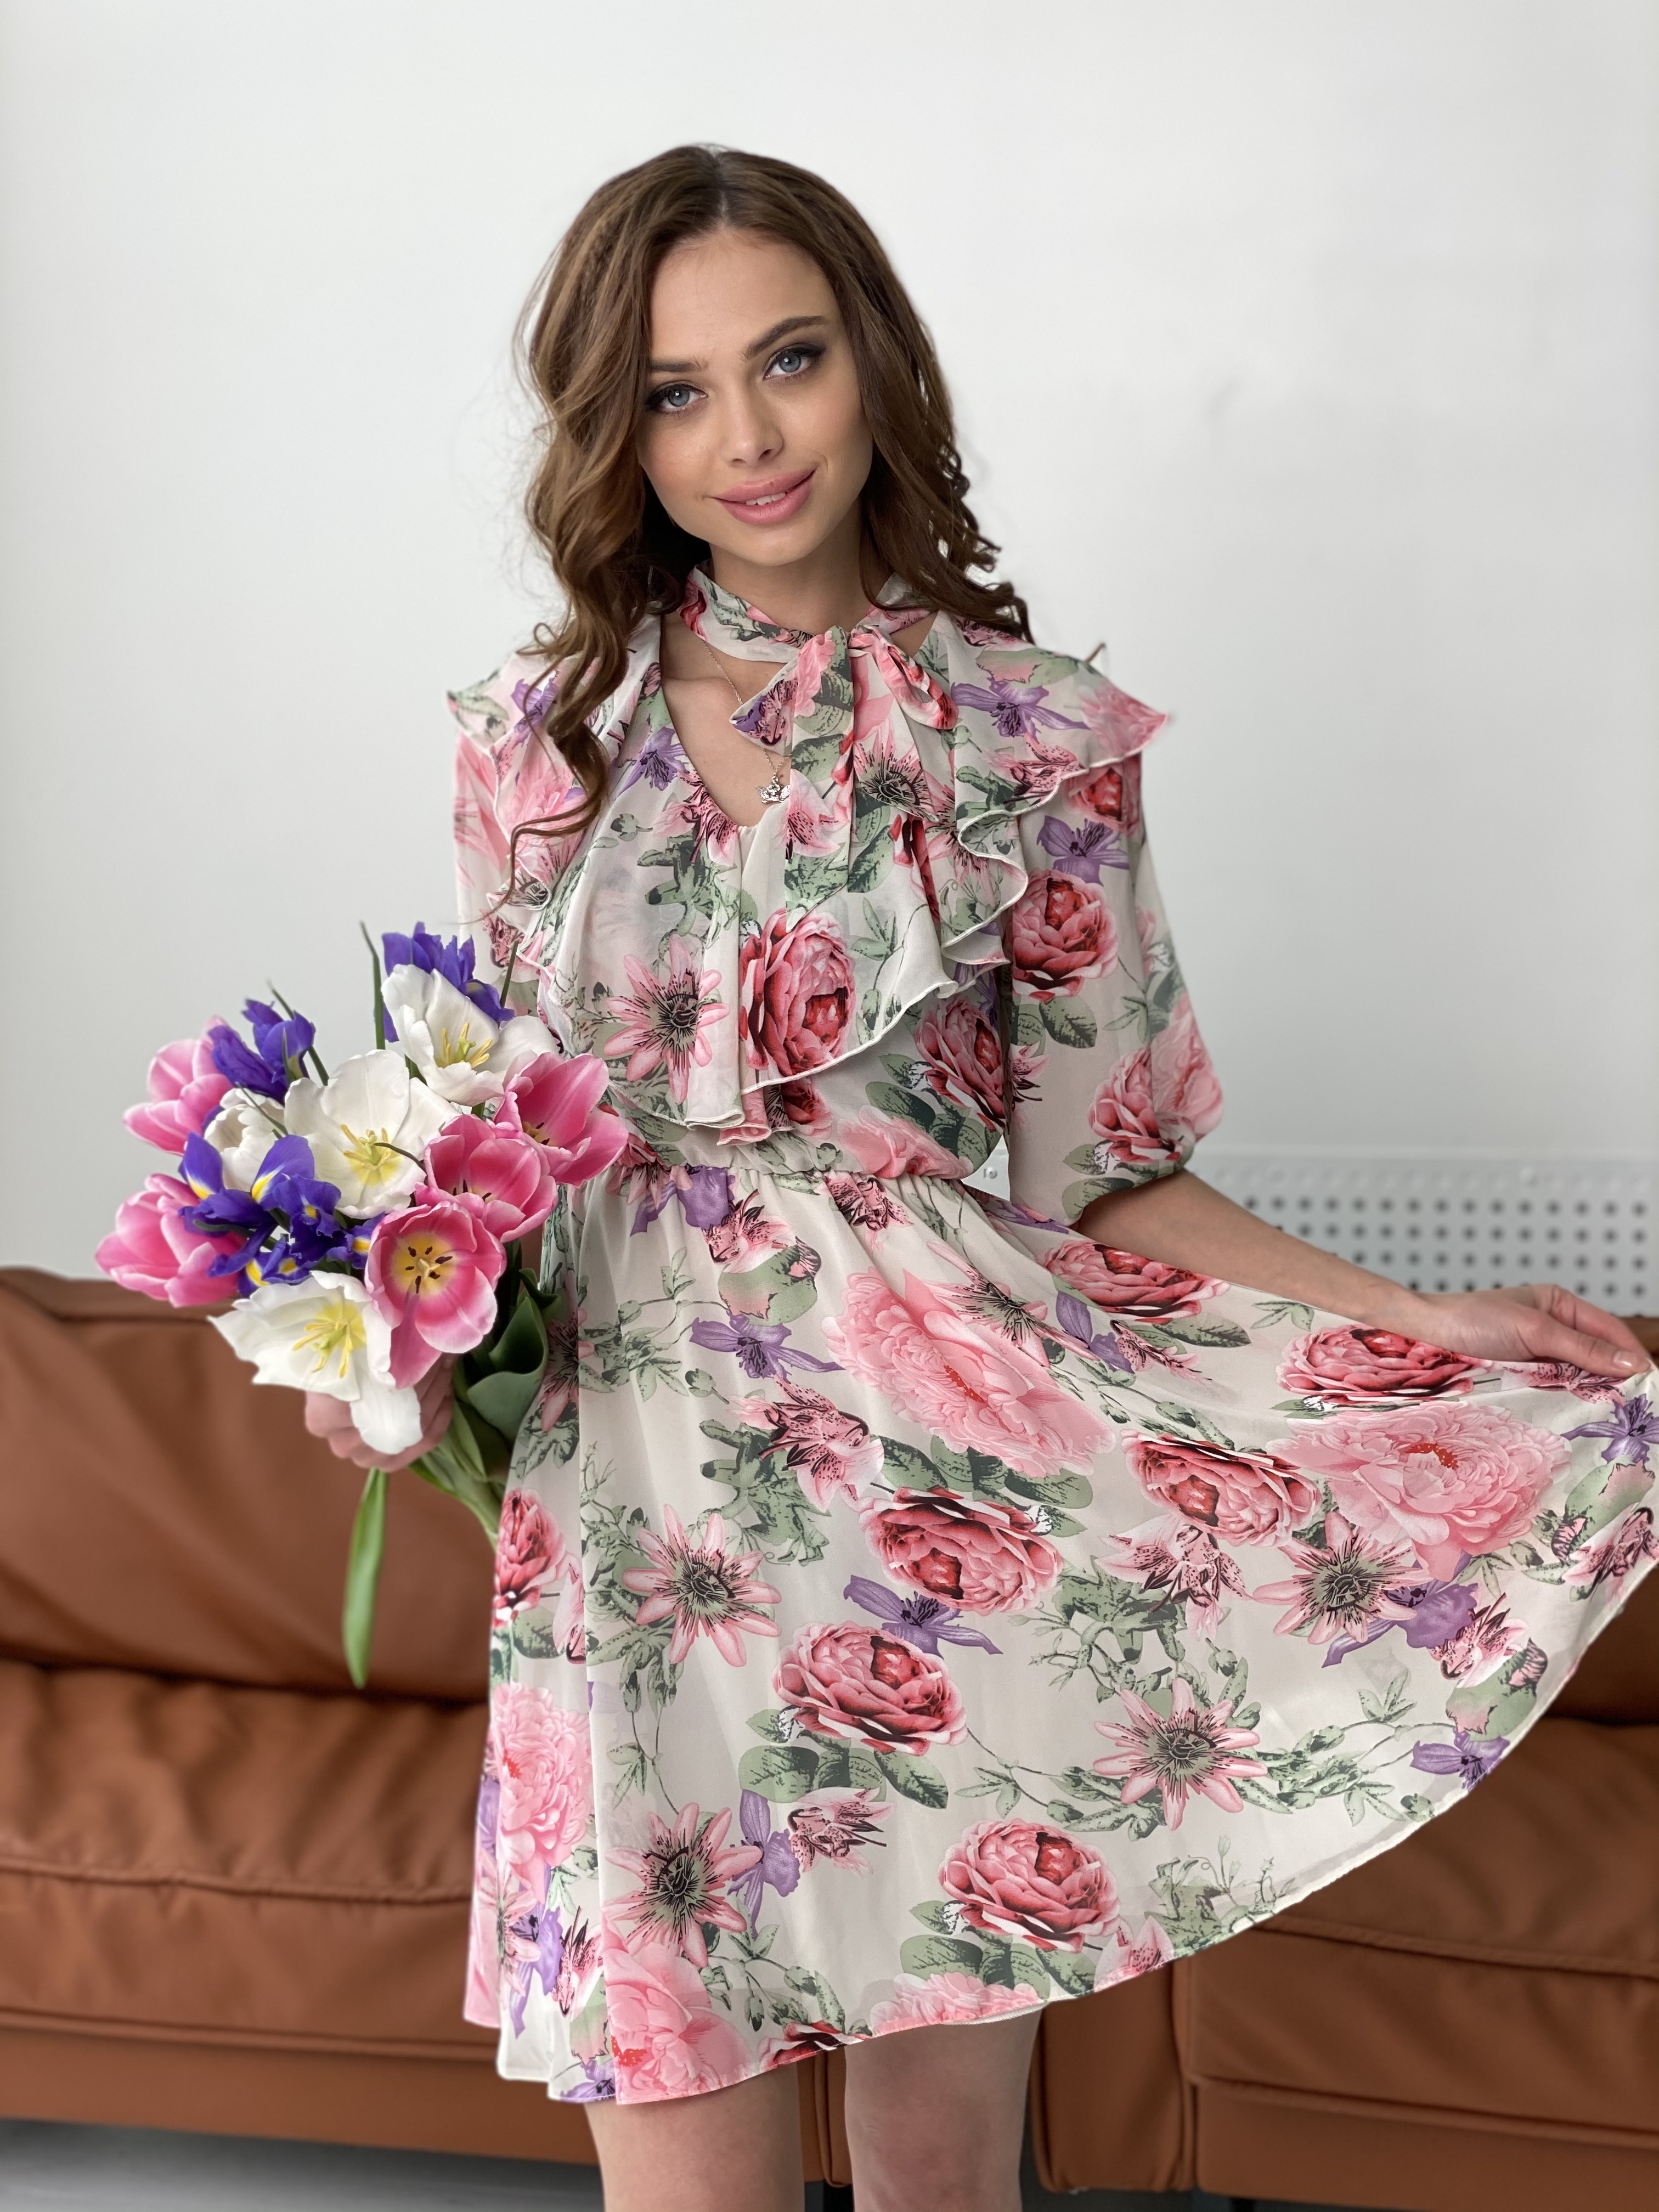 Блюз платье в леопардовый принт 7093 АРТ. 42549 Цвет: Цветы комби беж - фото 4, интернет магазин tm-modus.ru